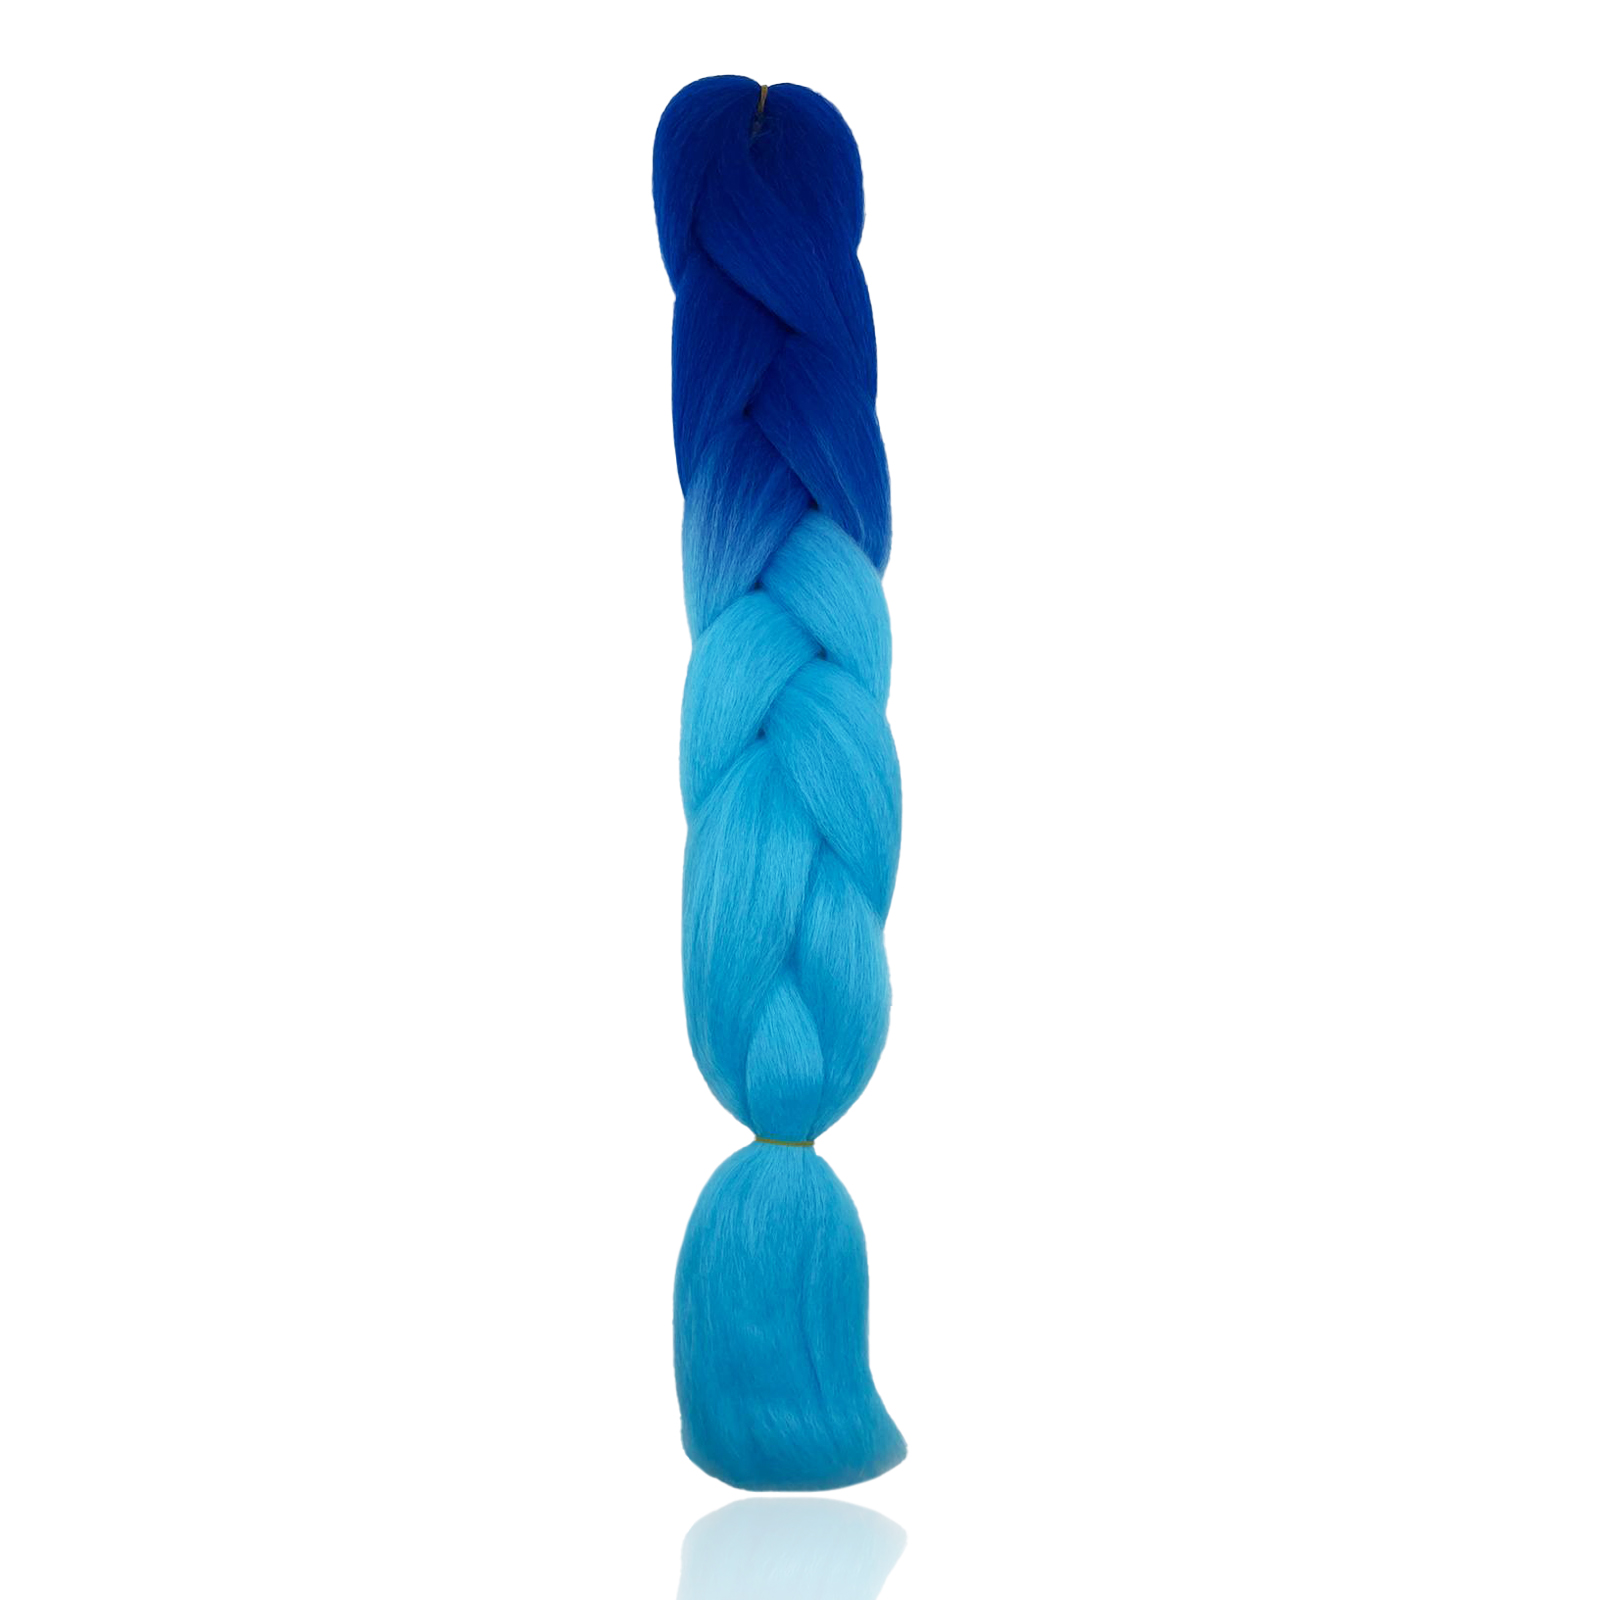 Канекалон Market toys lab накладные волосы для плетения кос, сине-голубой афрокудри для плетения волос ariel ариэль blue 7 длина 66см вес 300г